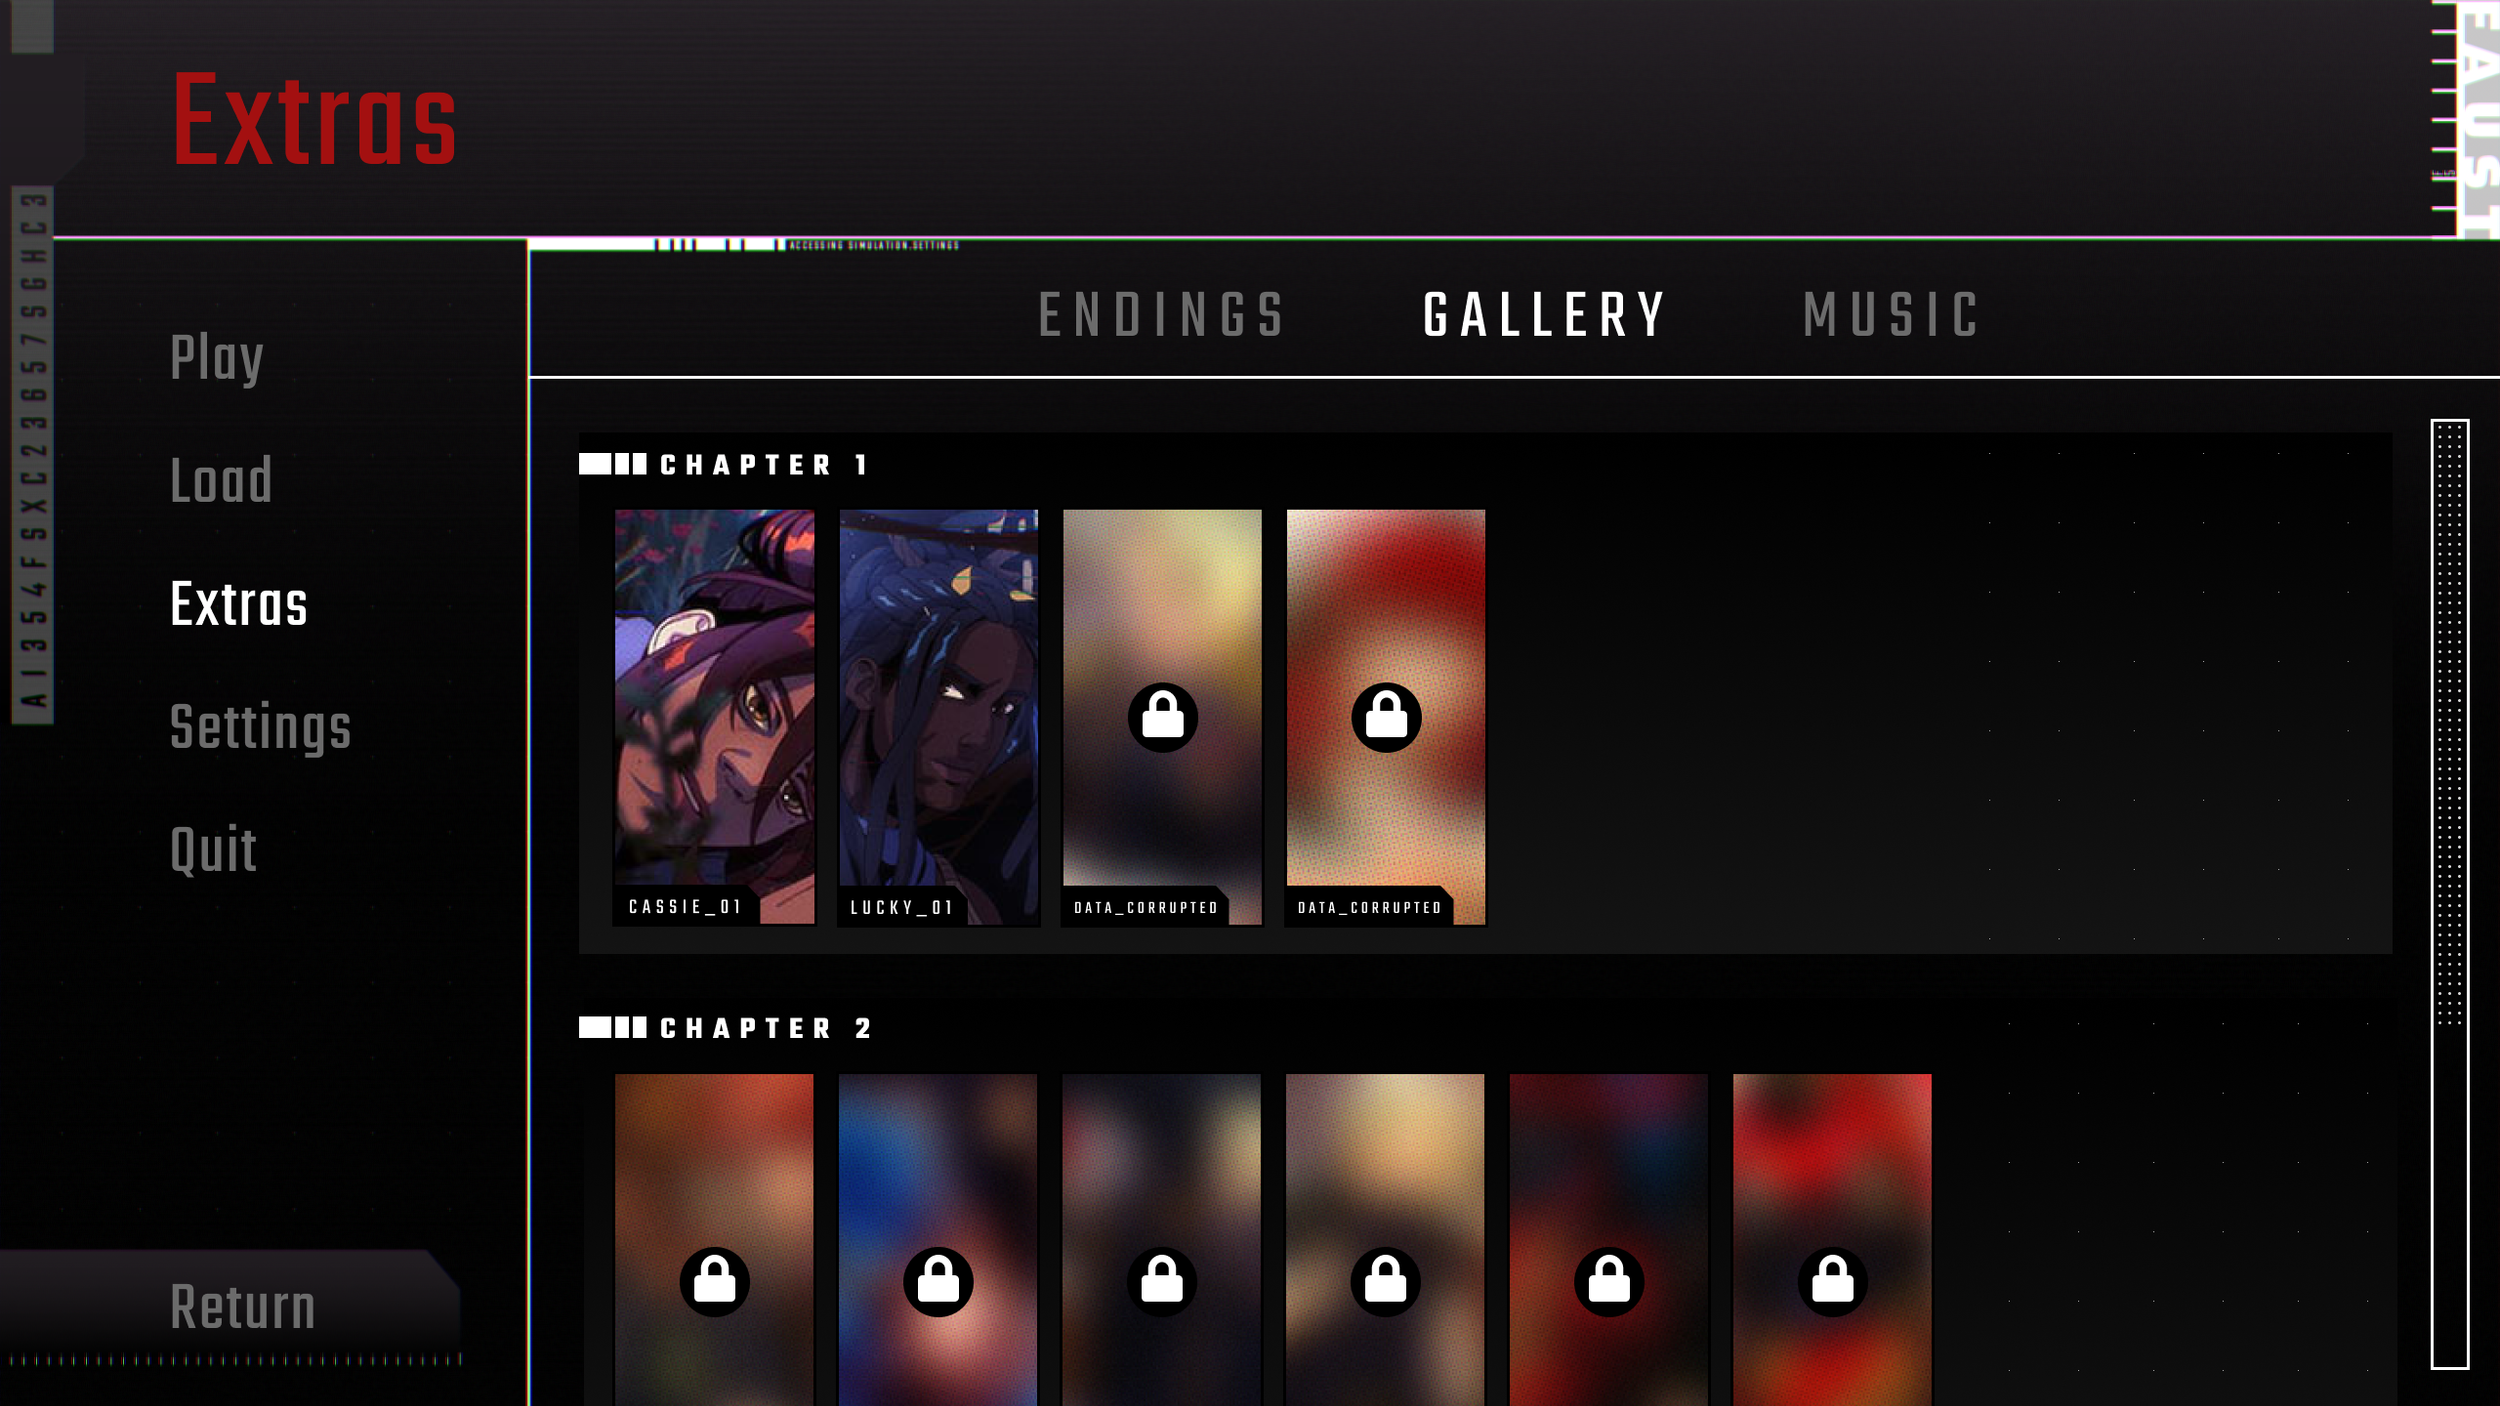 Extras Screen - Unlockable Gallery